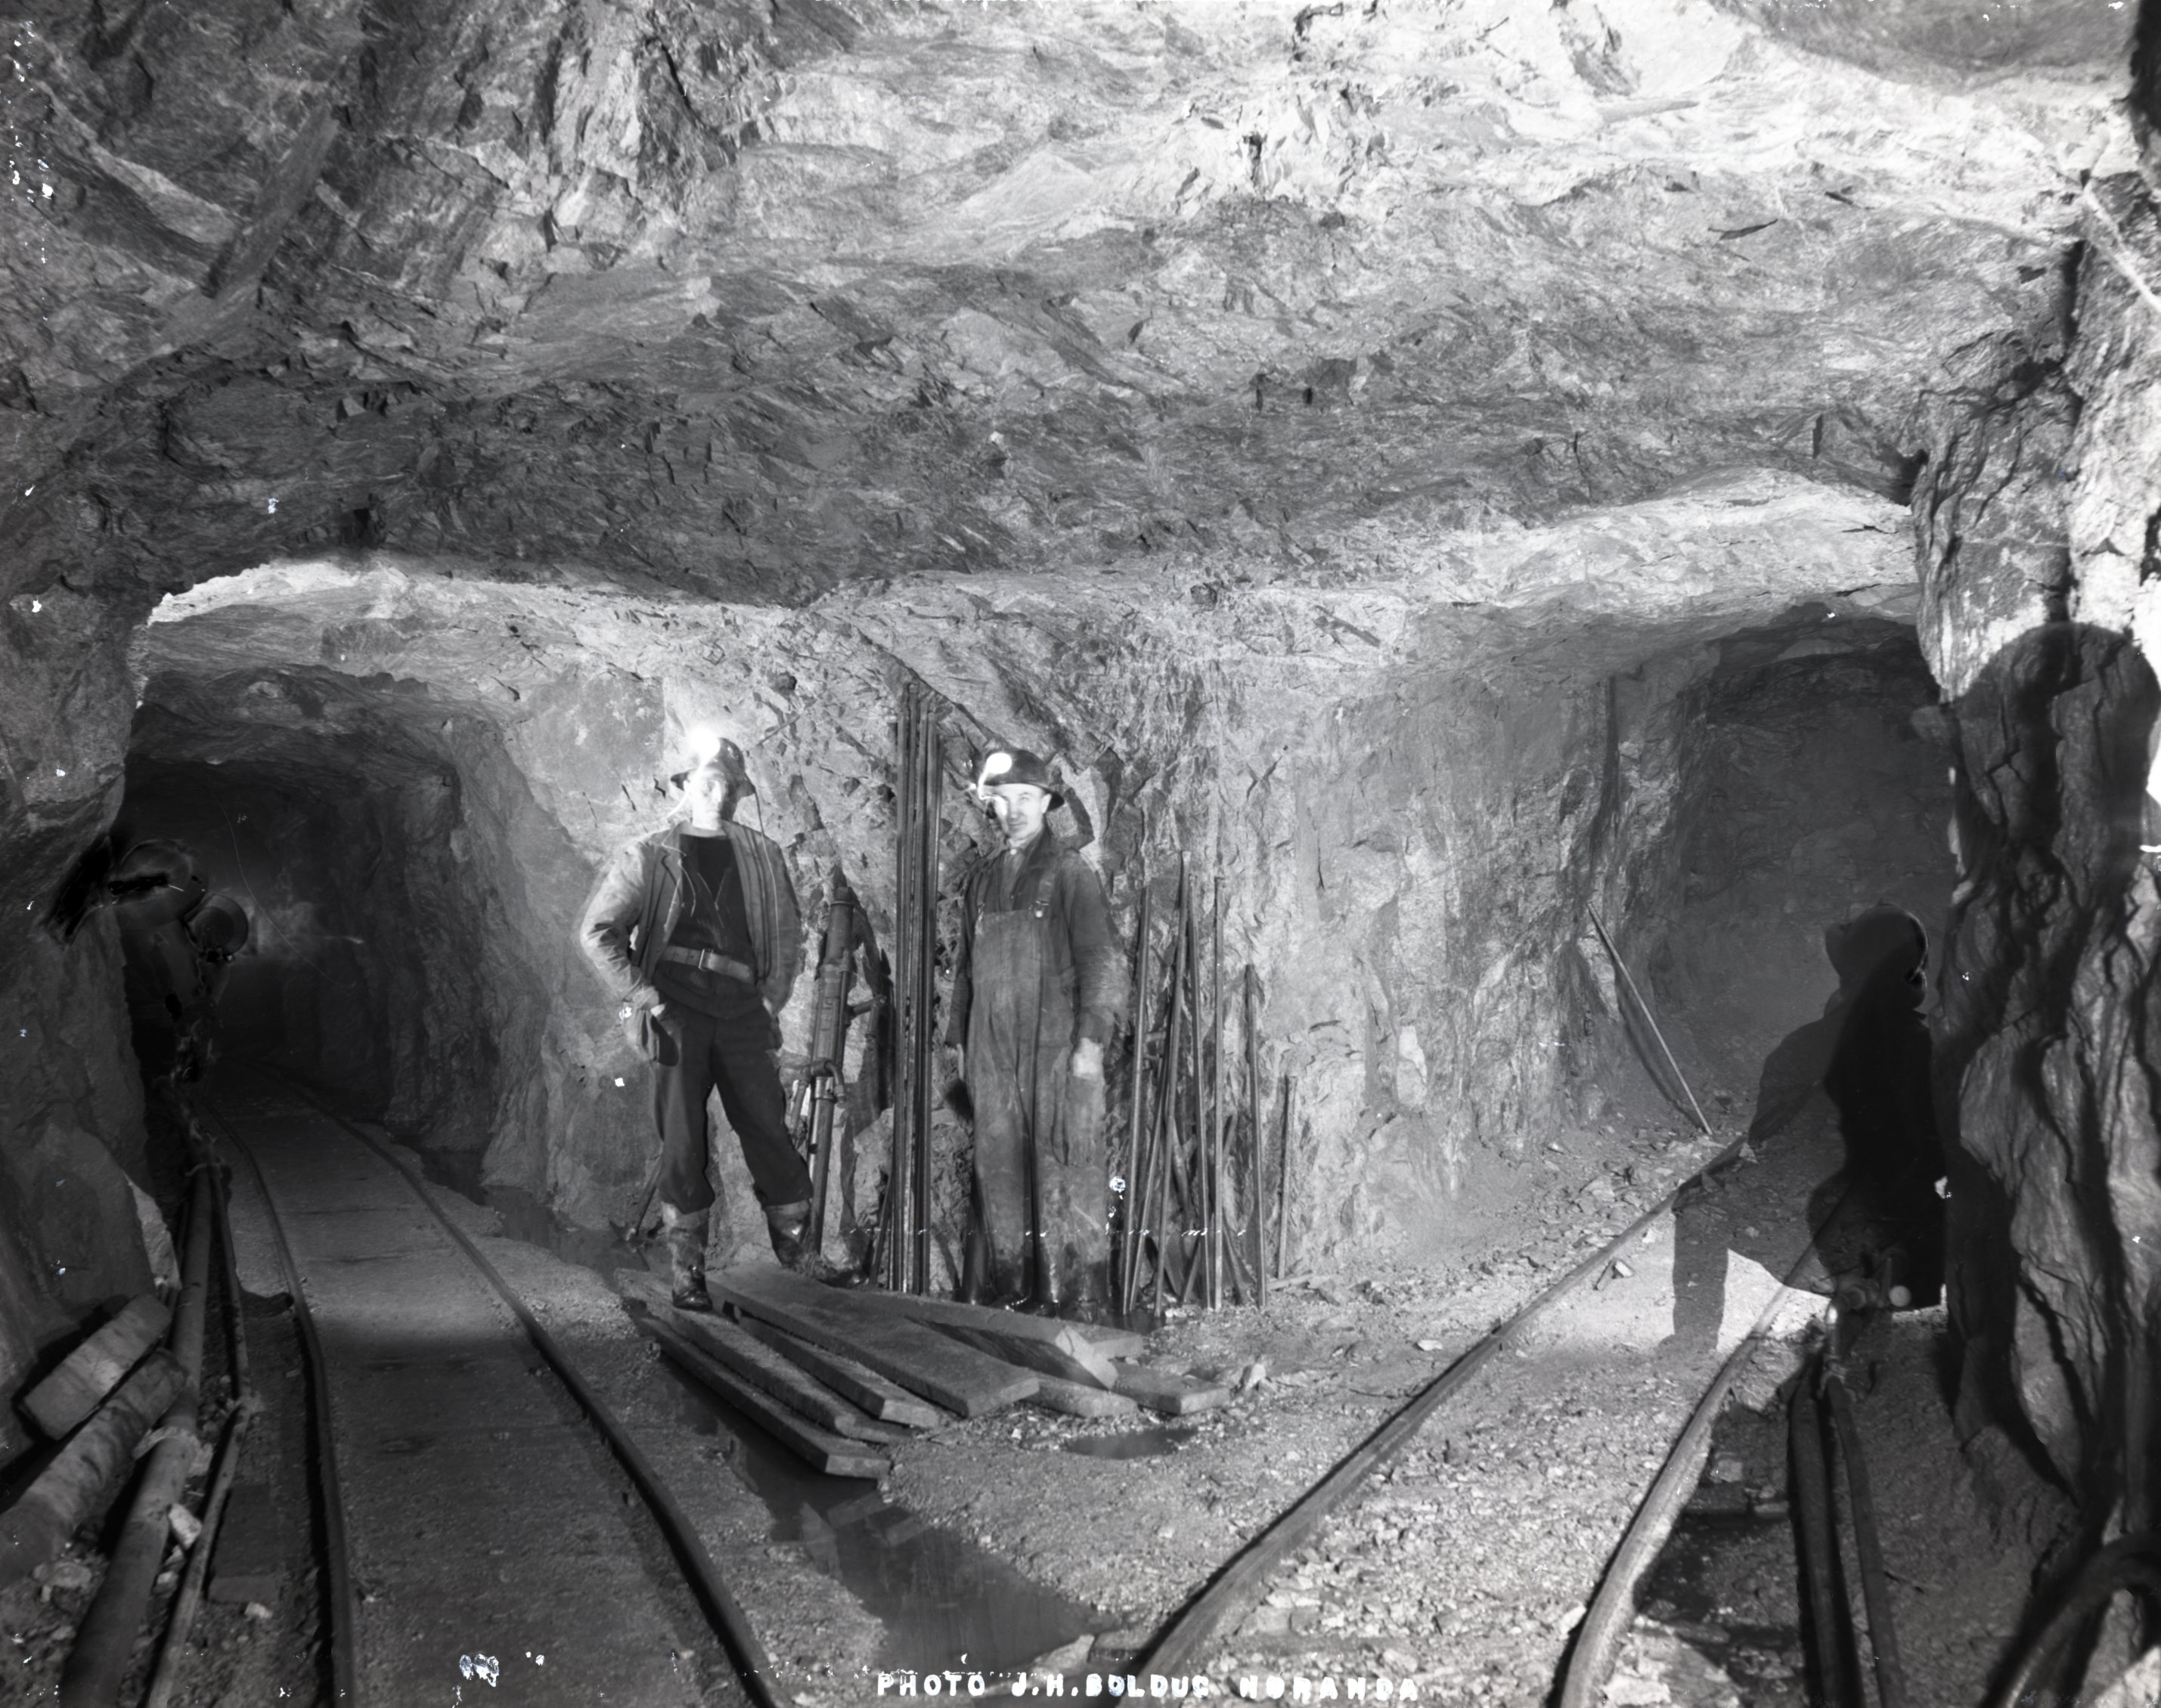 Photographie en noir et blanc de l’intersection entre trois galeries à l’intérieur d’une mine. Il y a deux rails de chemin de fer par terre, ainsi que deux hommes qui posent devant une foreuse et des aciers.